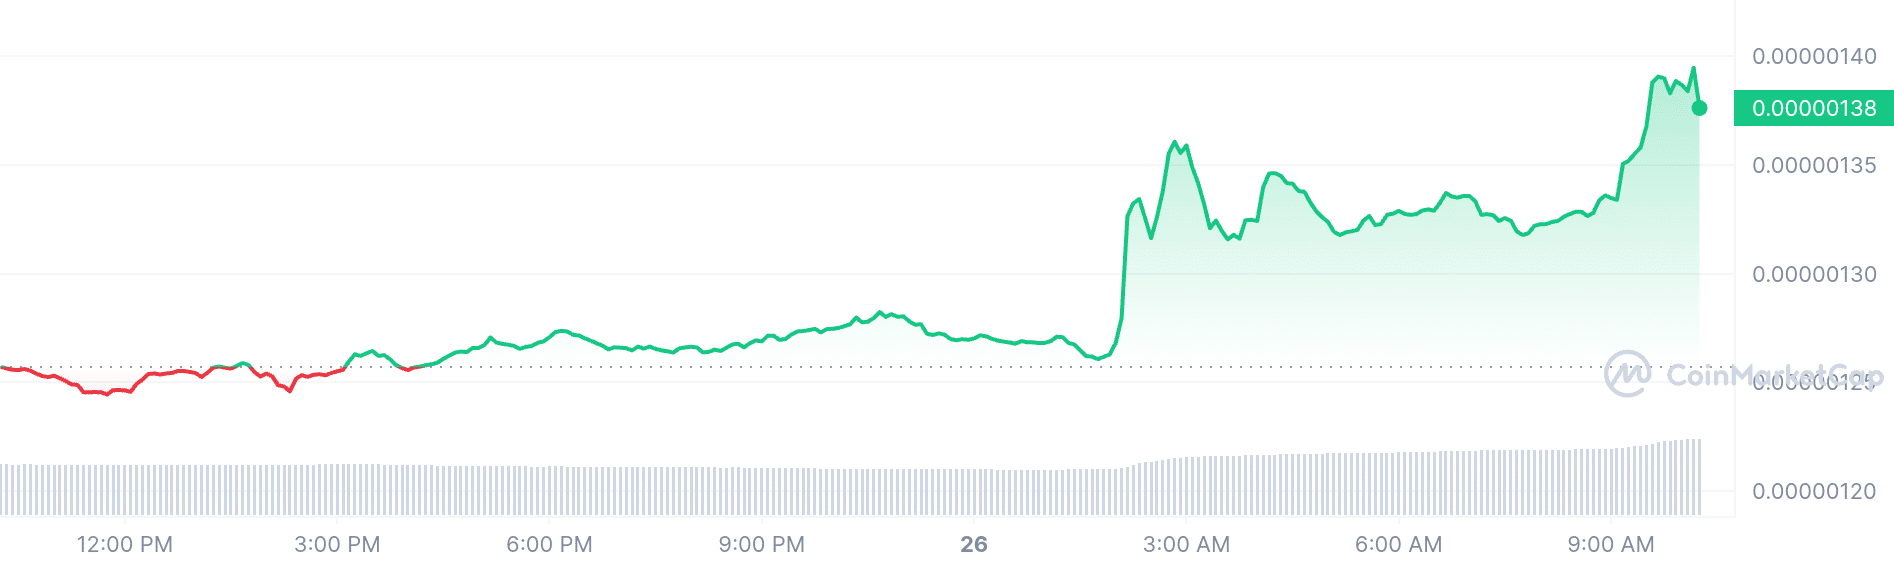 BitTorrent price chart